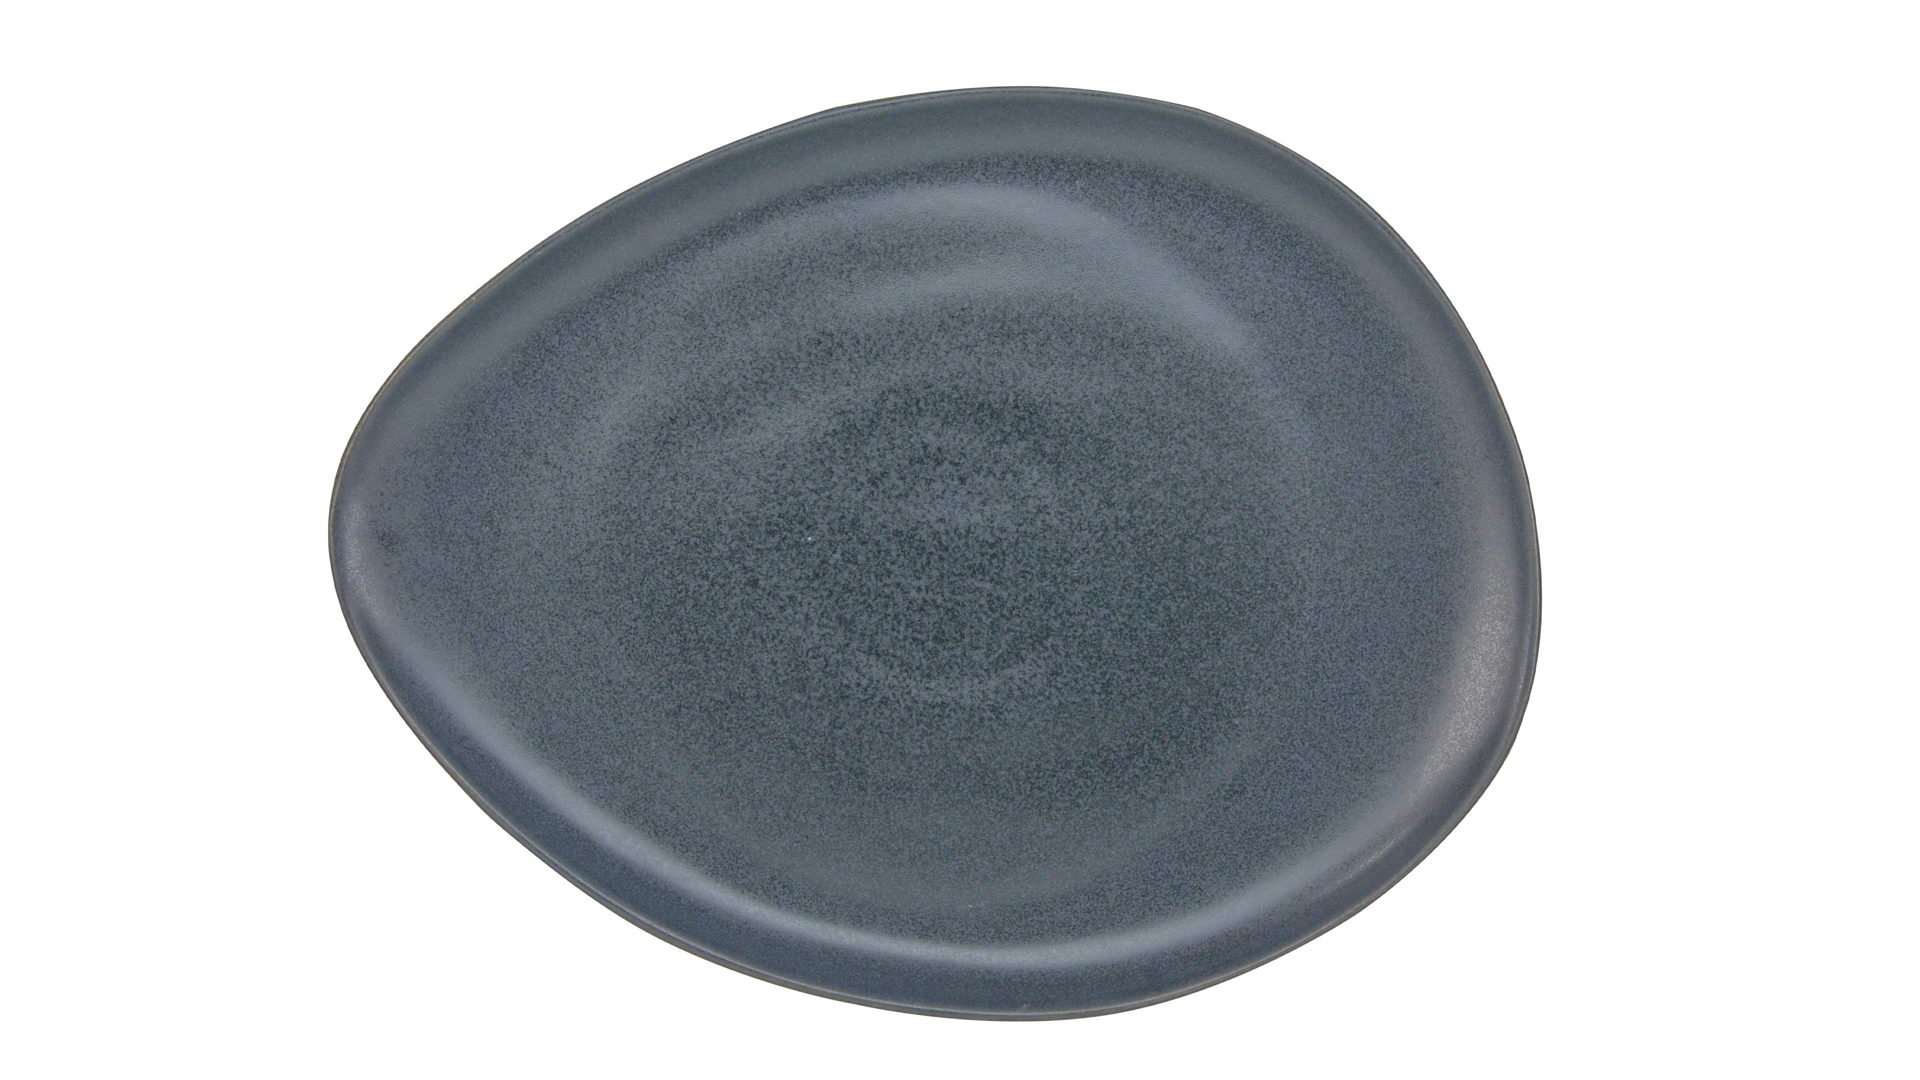 Platte Creatable aus Steinzeug in Schwarz CREATABLE Pietra – Gourmetplatte schwarzes Steinzeug – ca. 31 x 24 cm